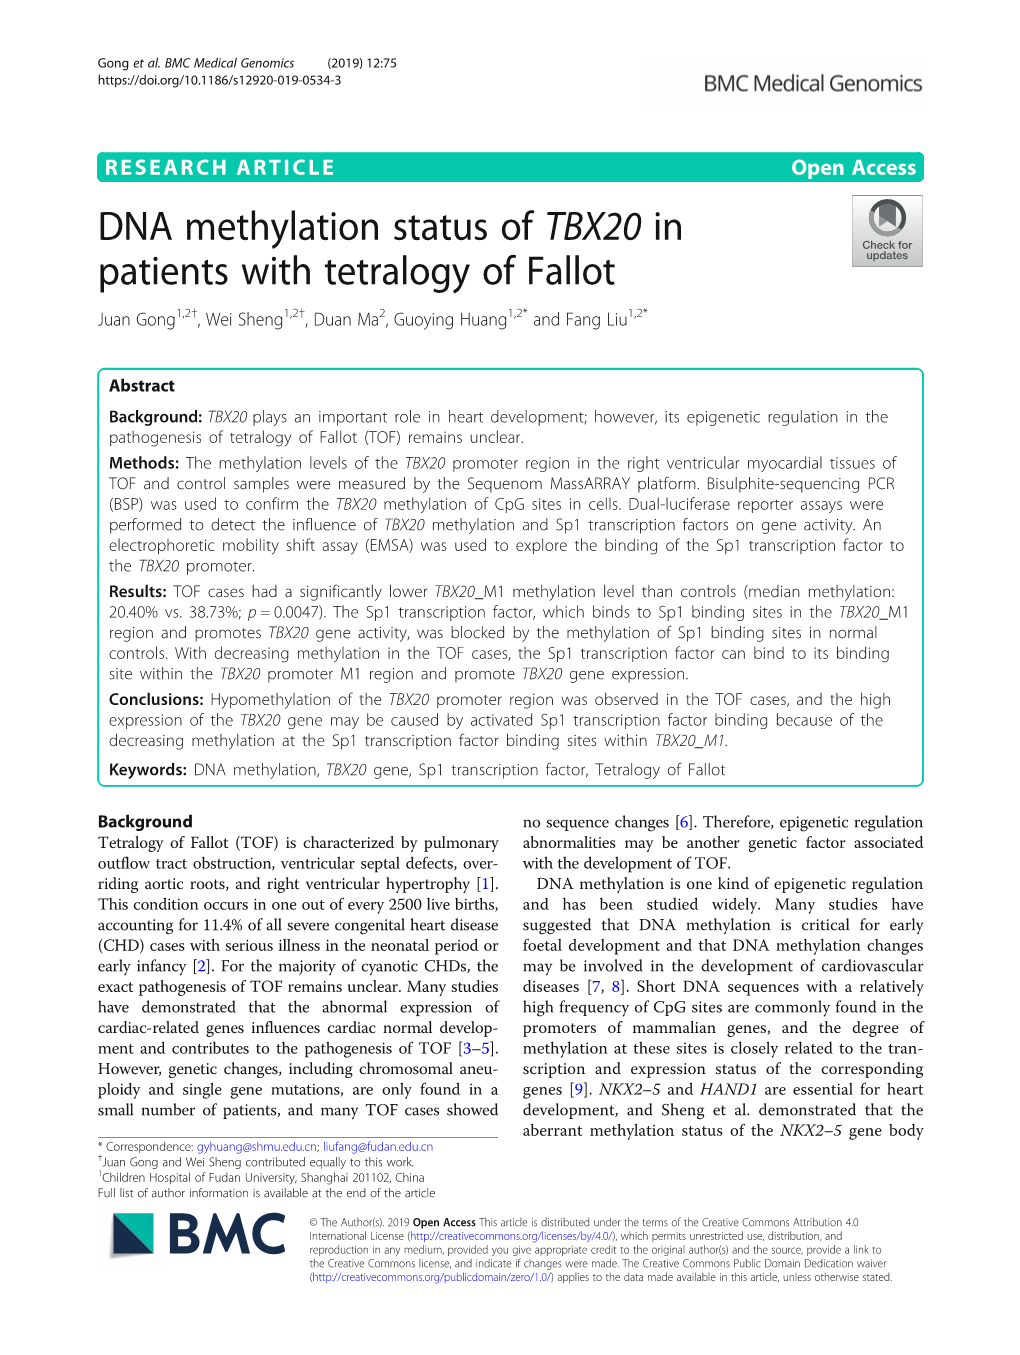 DNA Methylation Status of TBX20 in Patients with Tetralogy of Fallot Juan Gong1,2†, Wei Sheng1,2†, Duan Ma2, Guoying Huang1,2* and Fang Liu1,2*